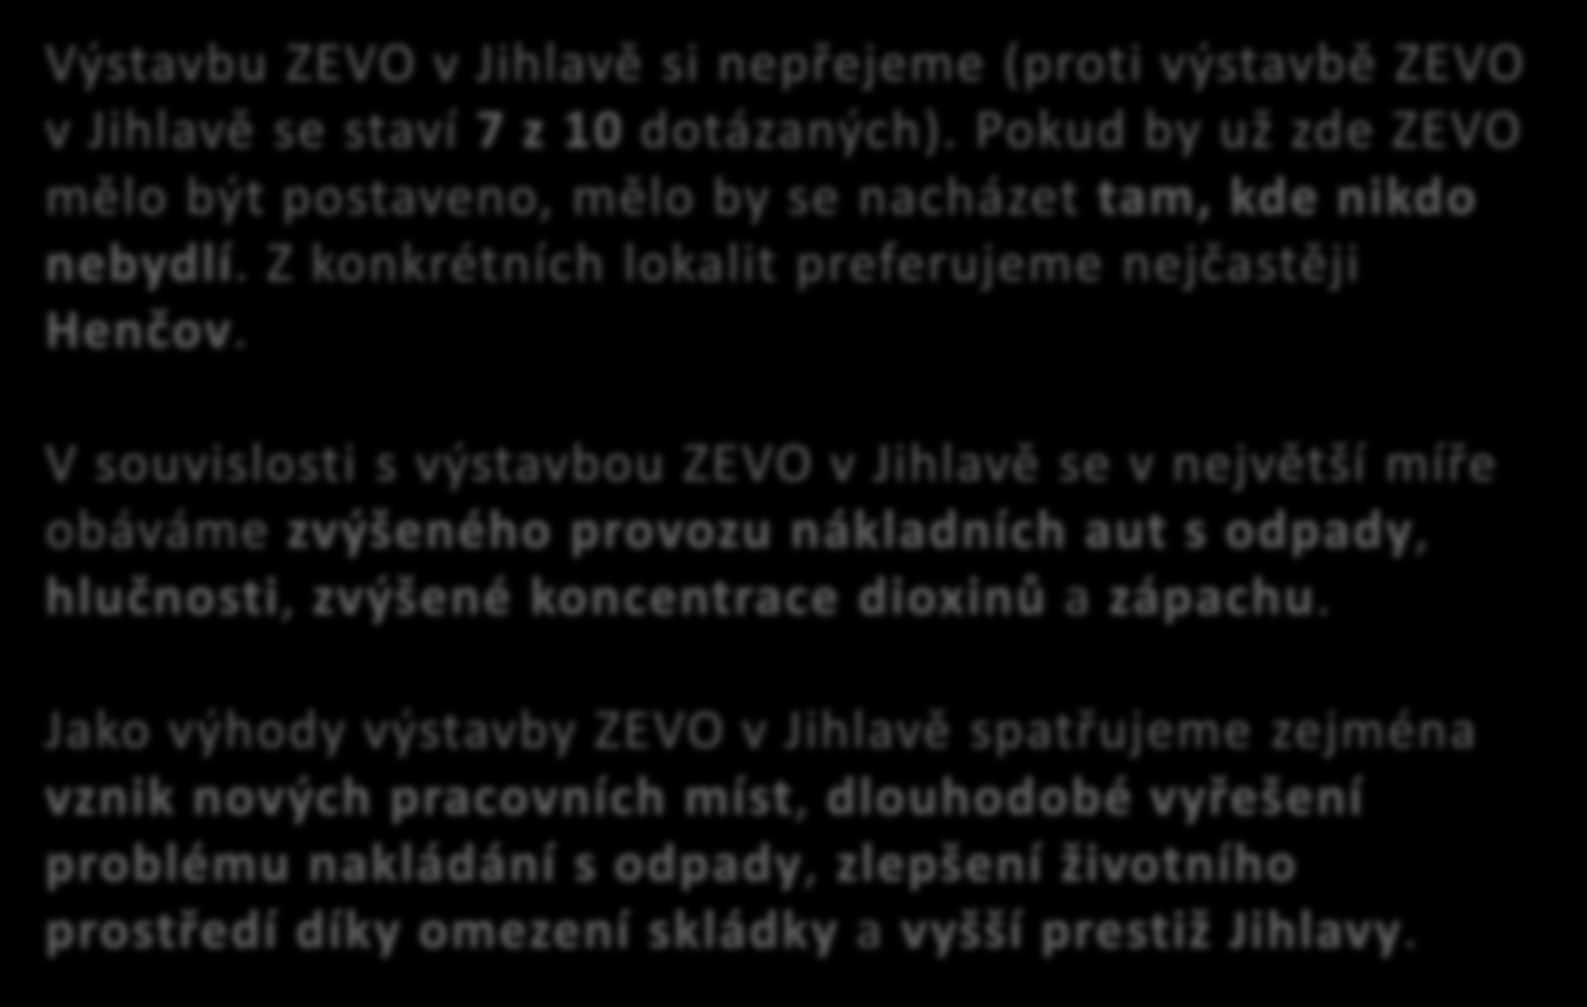 Výstavbu ZEVO v Jihlavě si nepřejeme (proti výstavbě ZEVO v Jihlavě se staví 7 z 10 dotázaných). Pokud by už zde ZEVO mělo být postaveno, mělo by se nacházet tam, kde nikdo nebydlí.